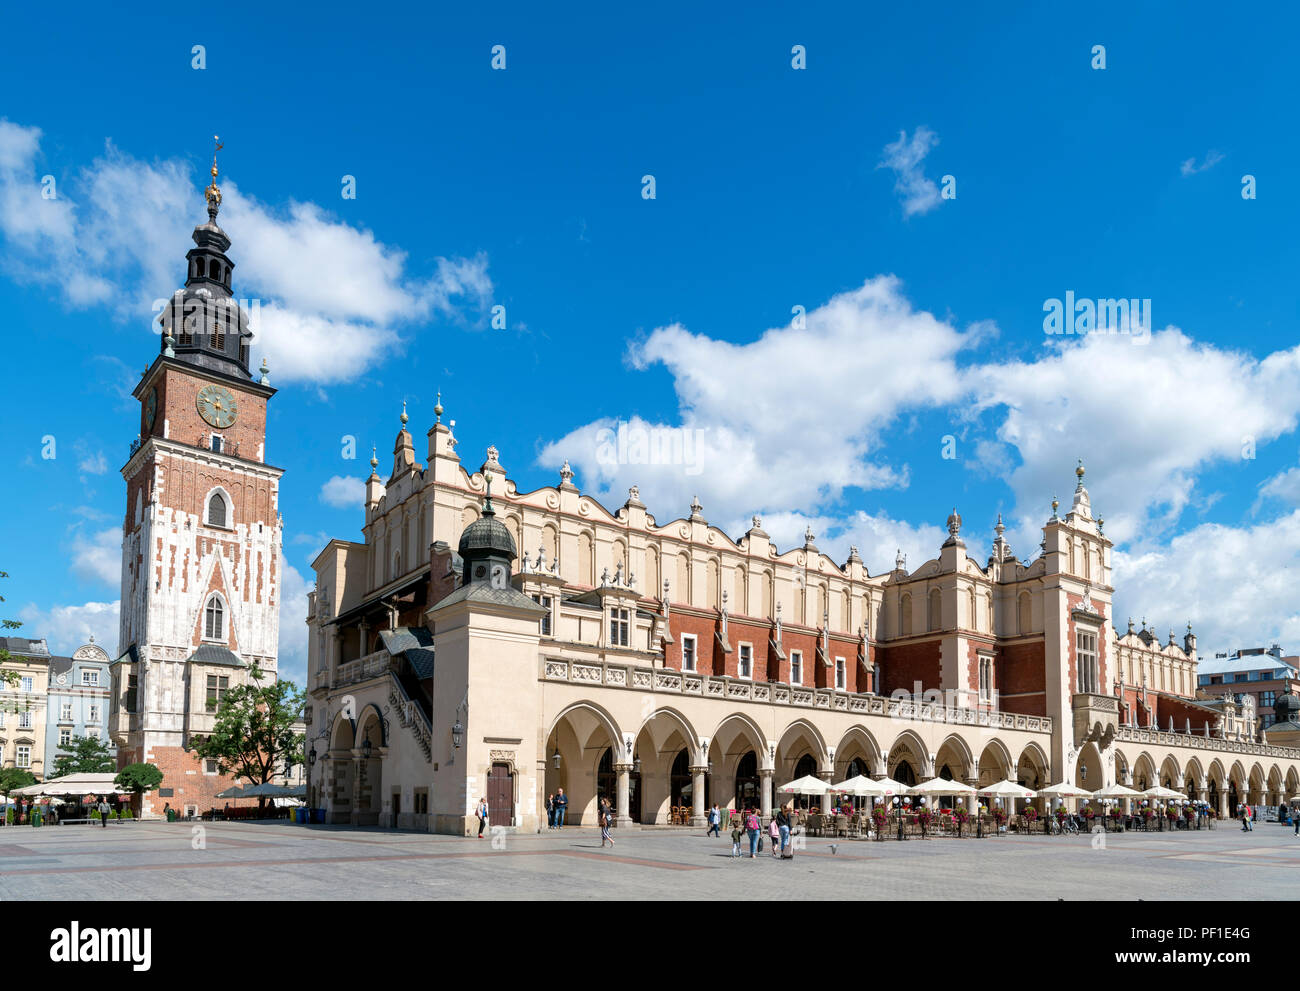 Krakow Old Town. Town Hall Tower (Wieża ratuszowa) and Cloth Hall (Sukiennice) in the Main Square ( Rynek Główny ), Kraków, Poland Stock Photo